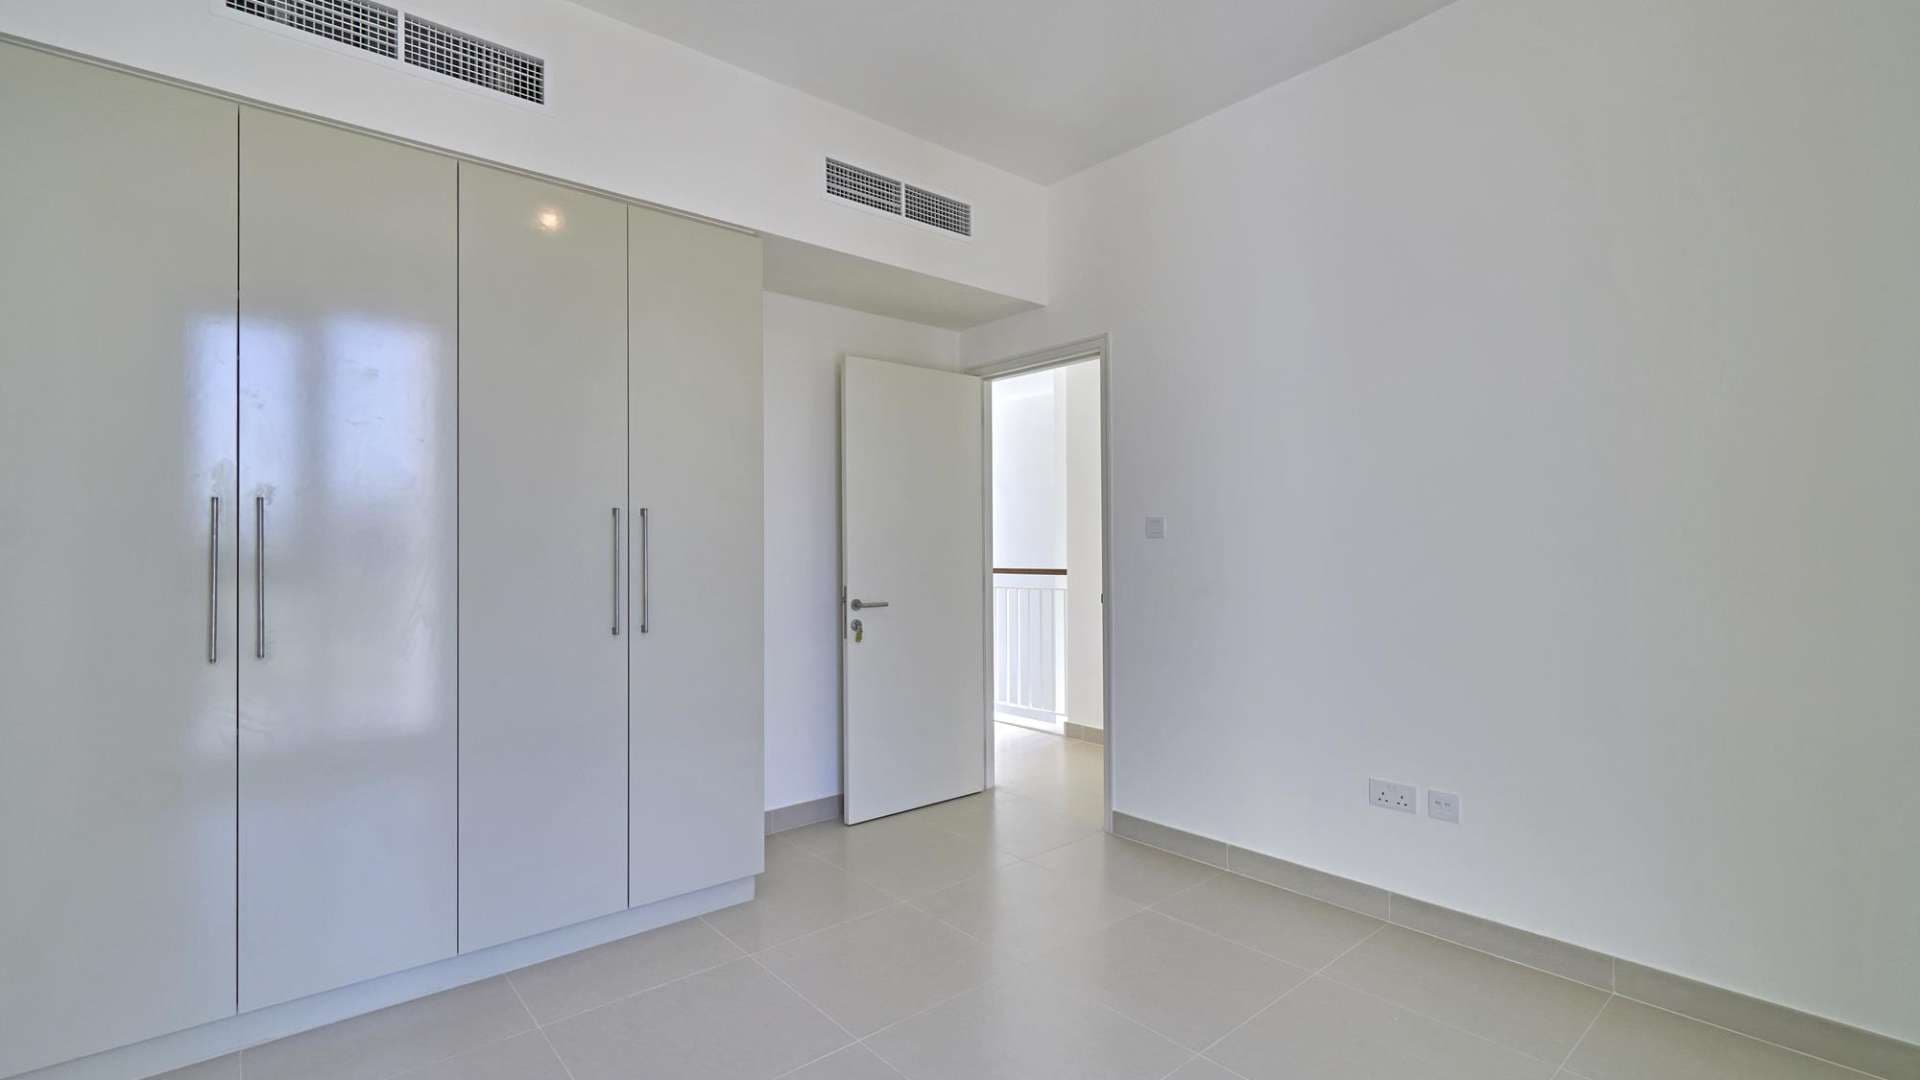 4 Bedroom Townhouse For Sale Maple At Dubai Hills Estate Lp08365 11237804af42e600.jpg